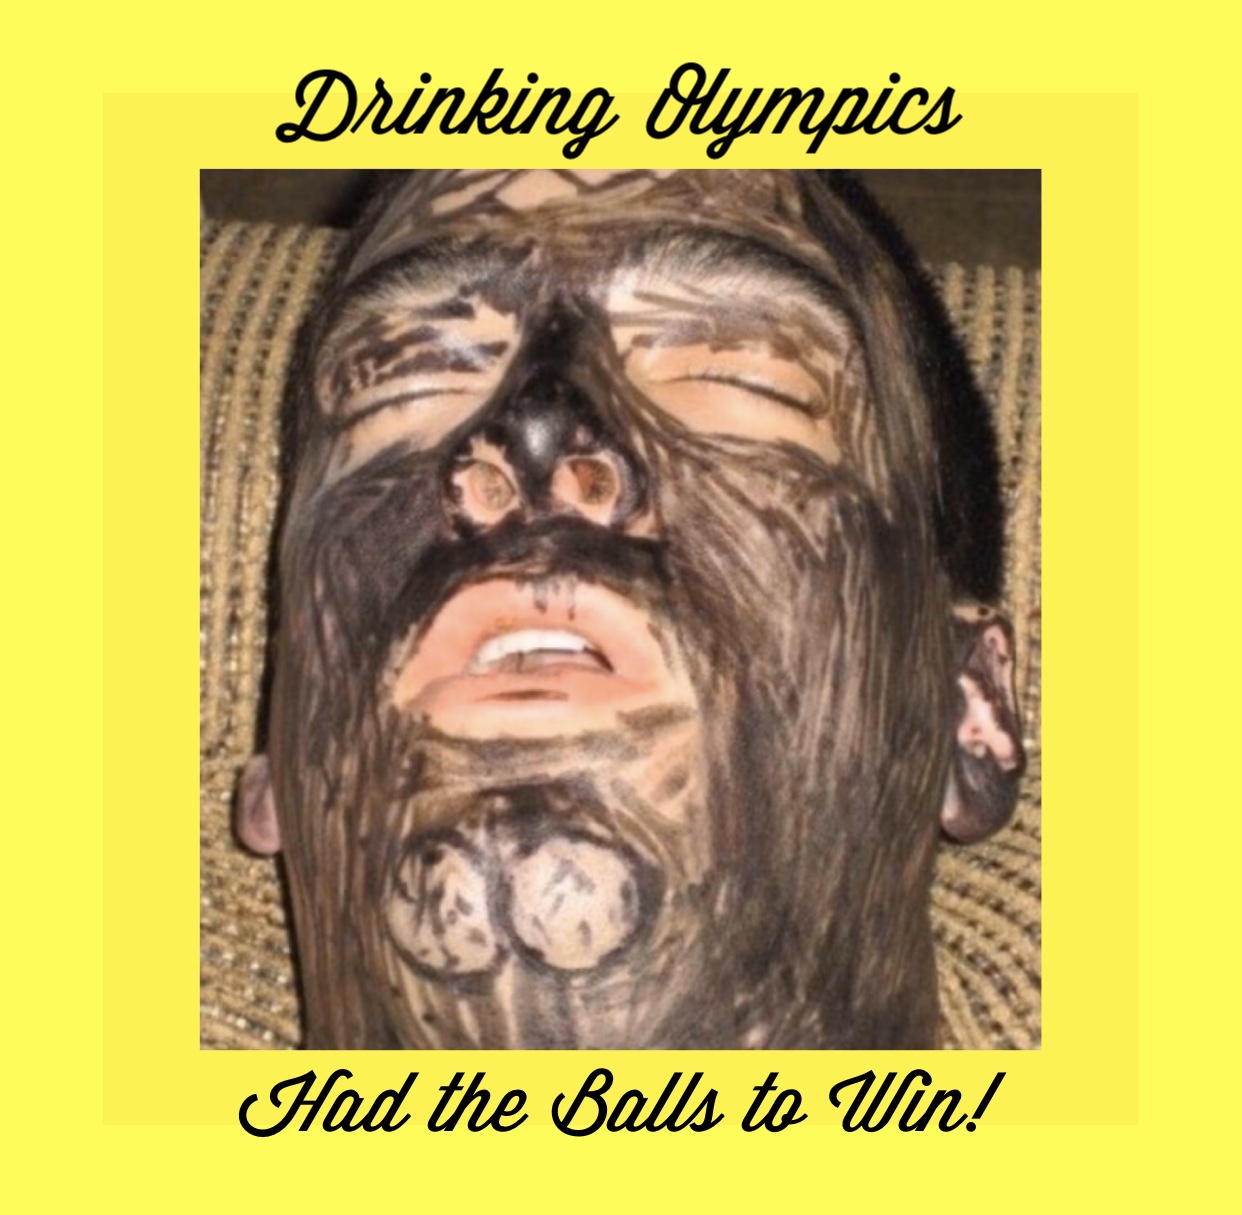 beard - Drinking Olympics Had the Balls to Win!